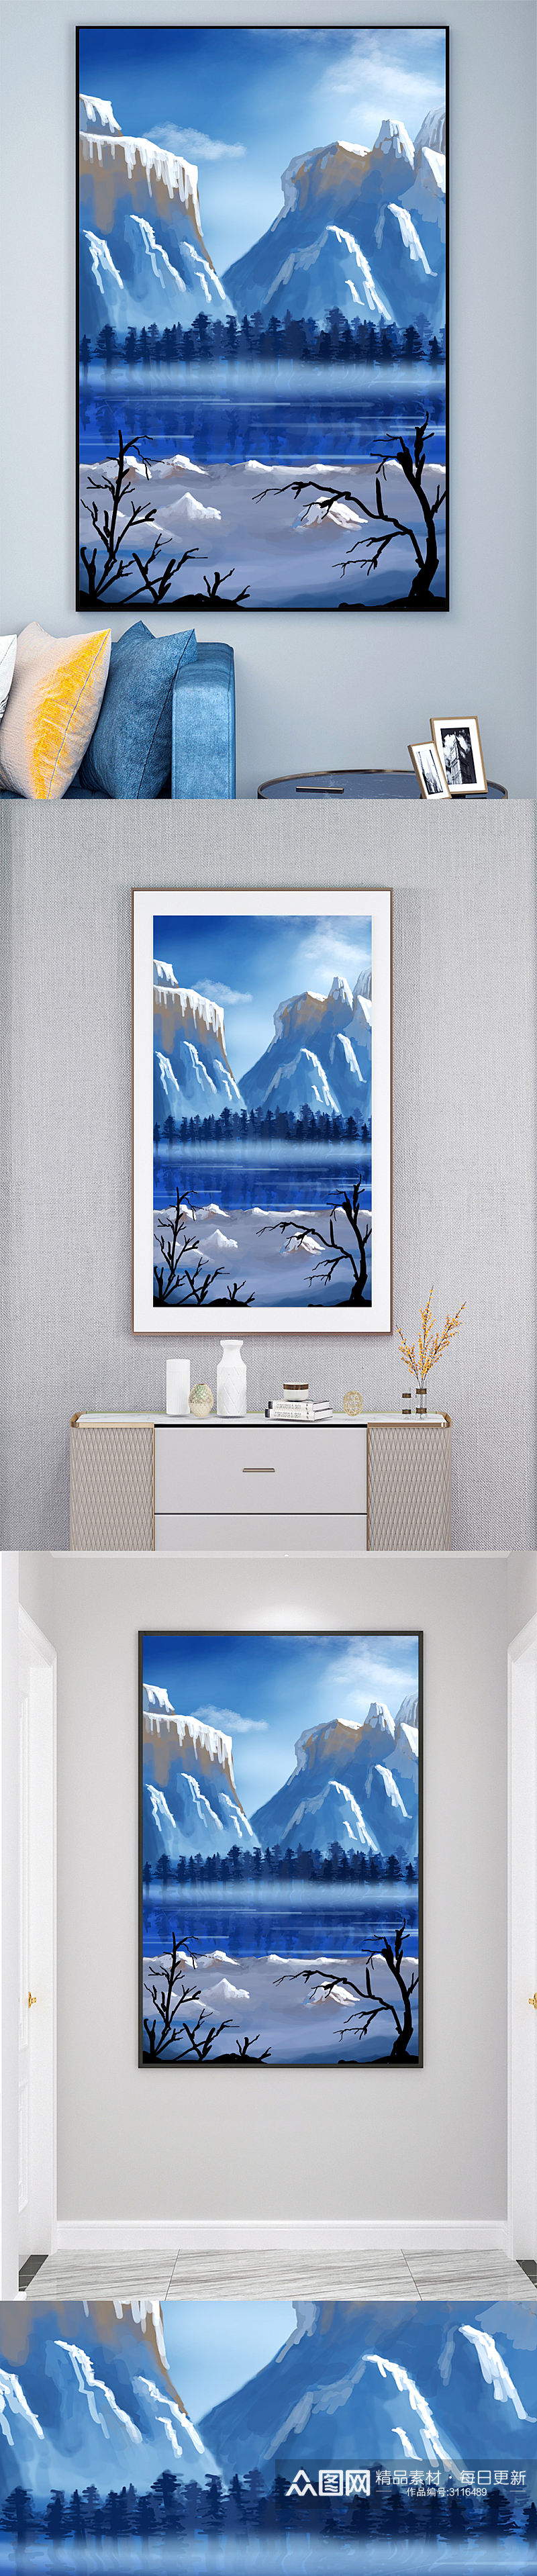 雪山风景油画壁画装饰画素材